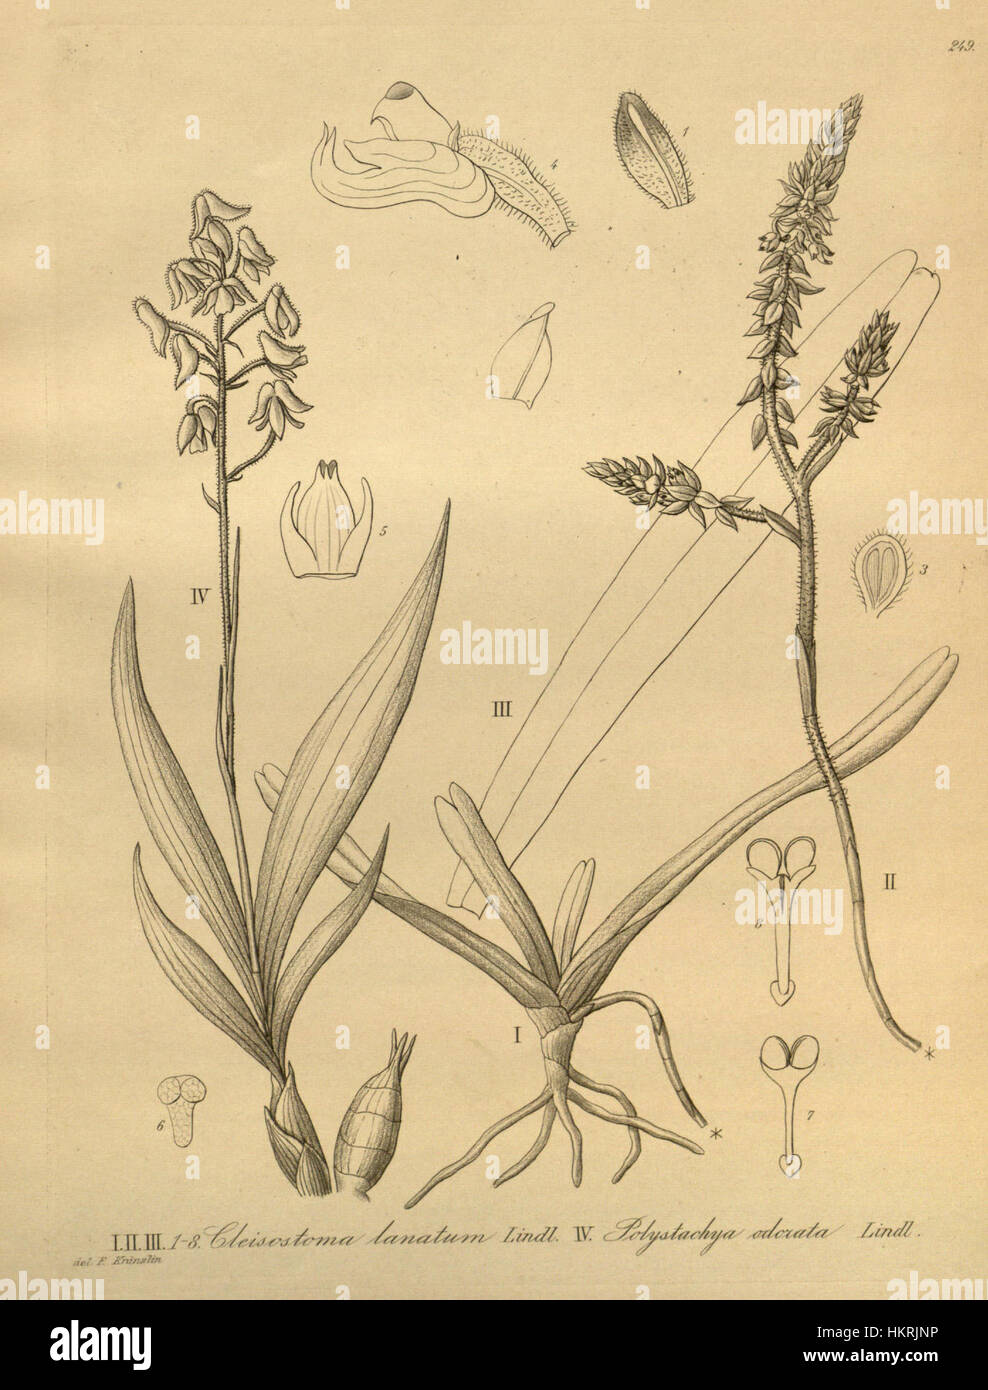 Cleisomeria lanatum (as Cleisostoma lanatum) - Polystachya odorata - Xenia 3 pl 249 Stock Photo